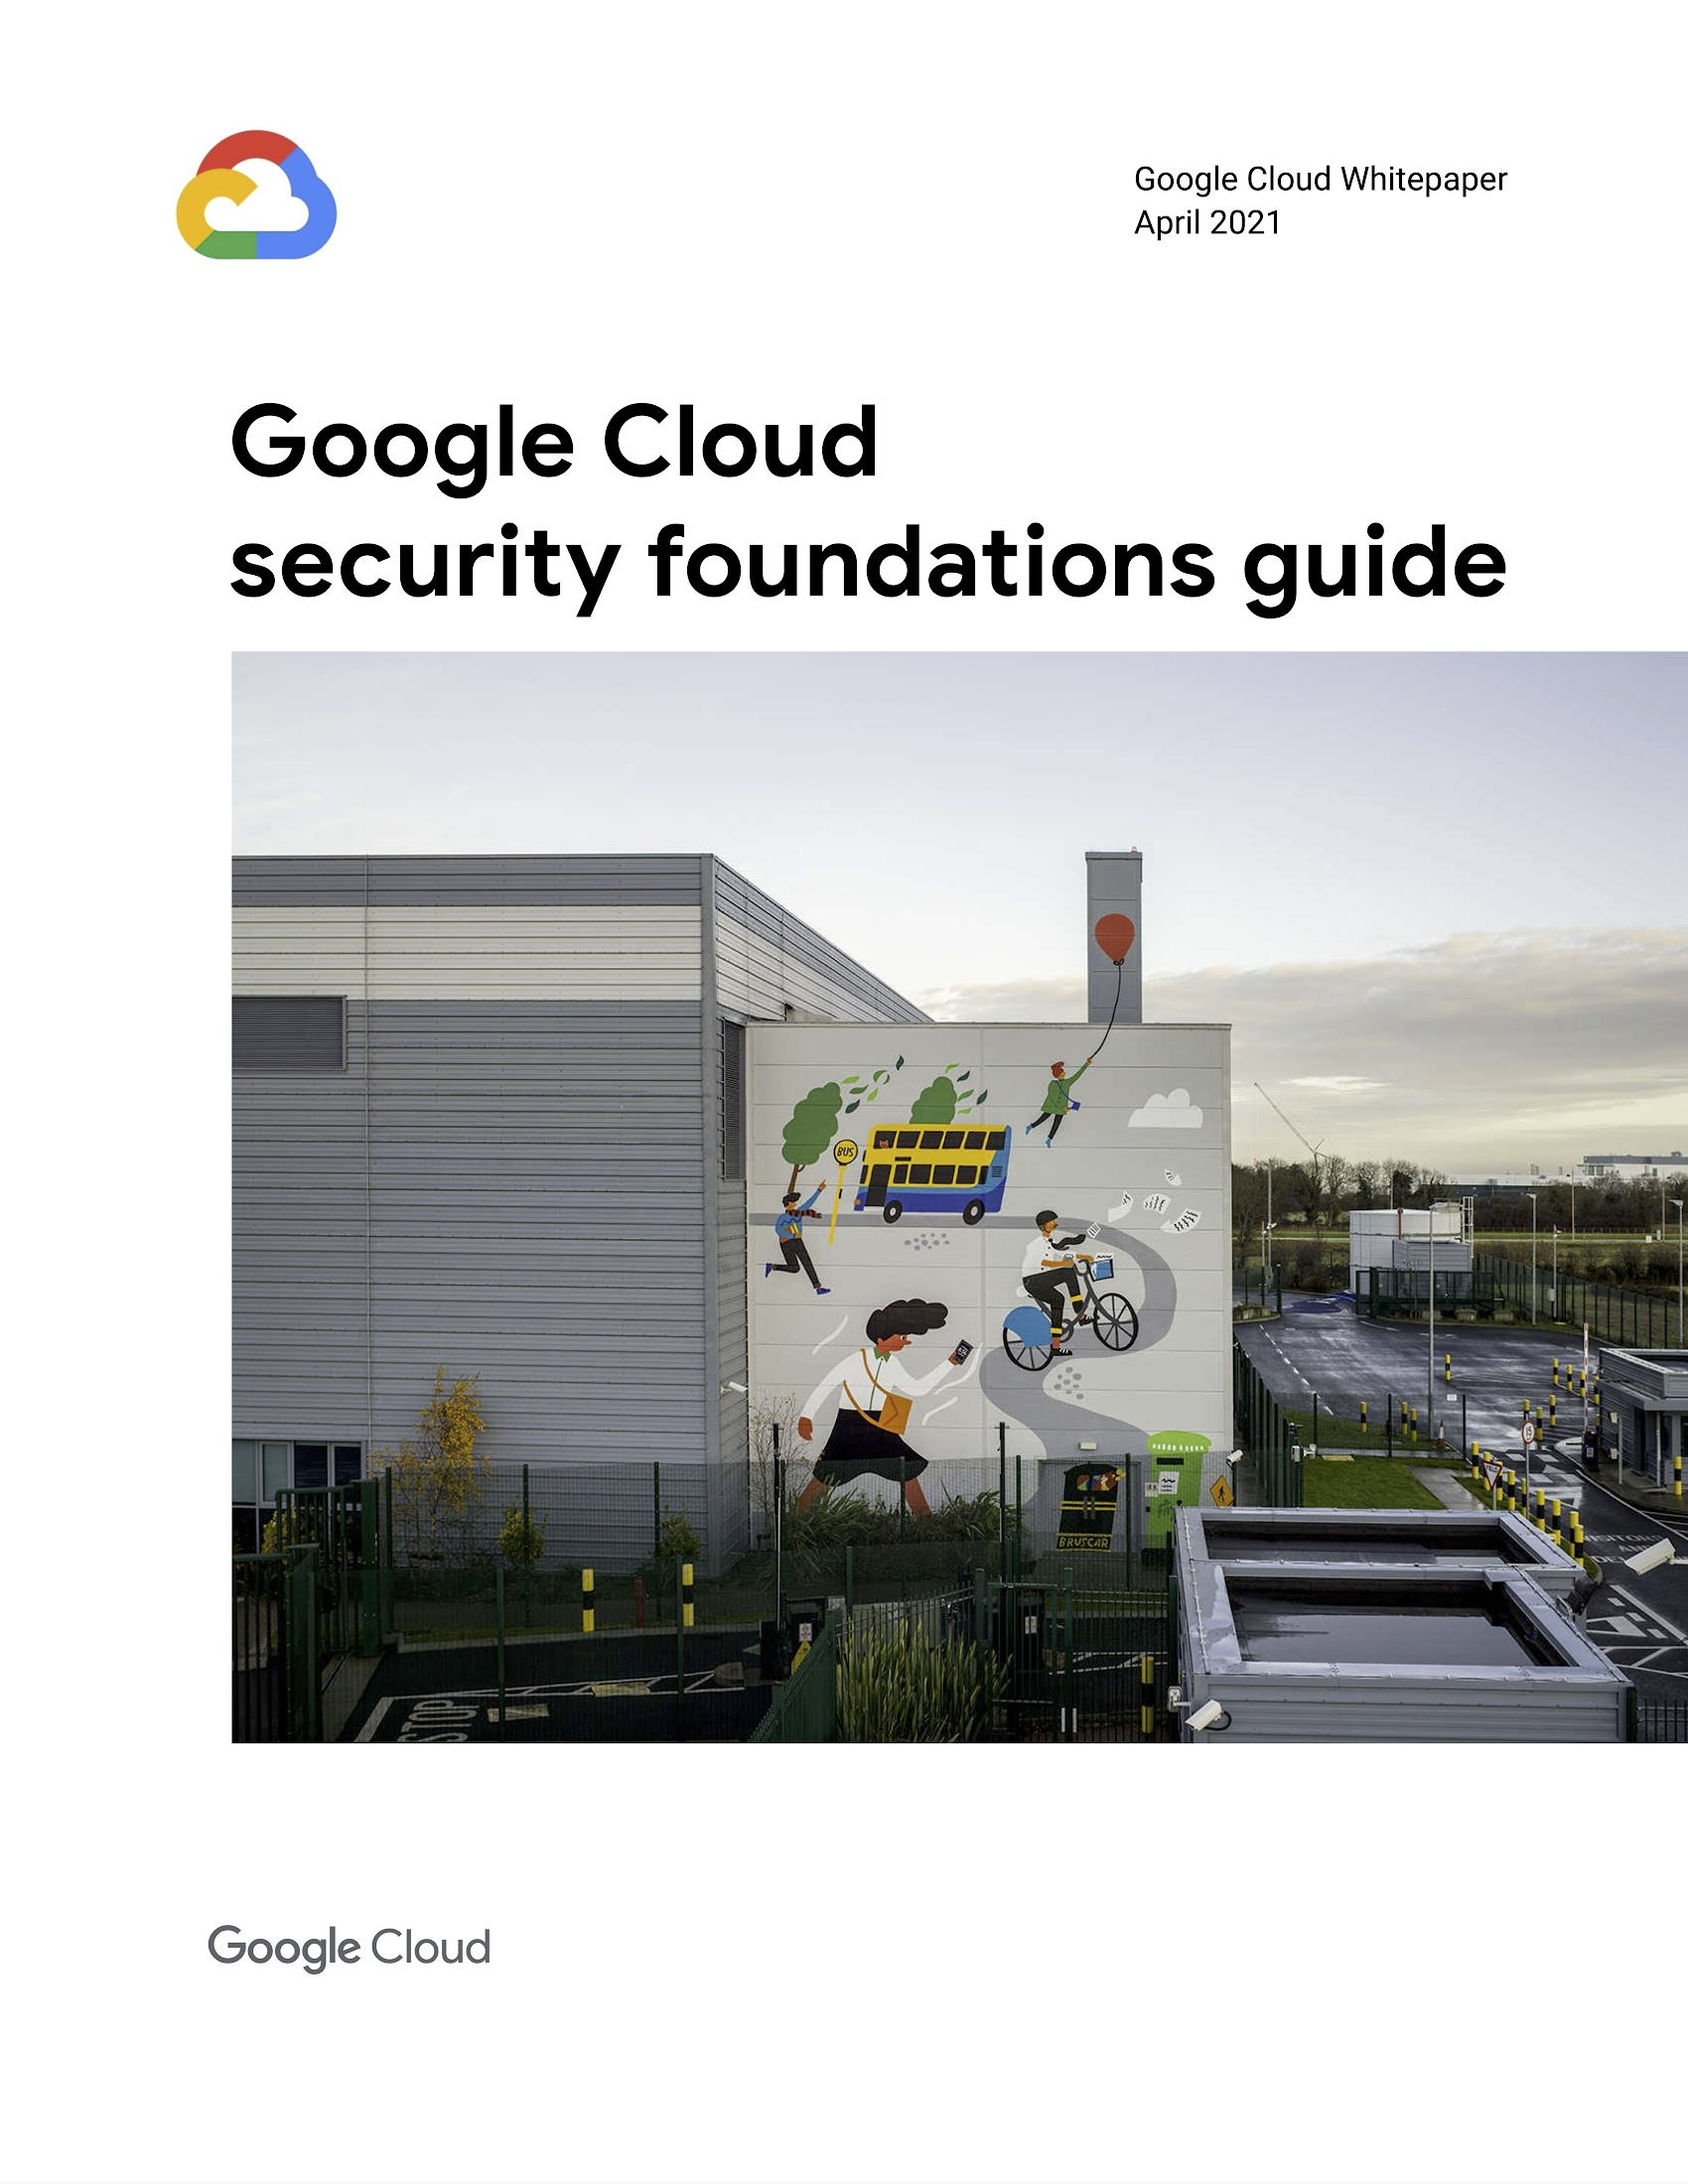 Cliquez sur l’image pour accéder au guide complet « security foundations blueprint »